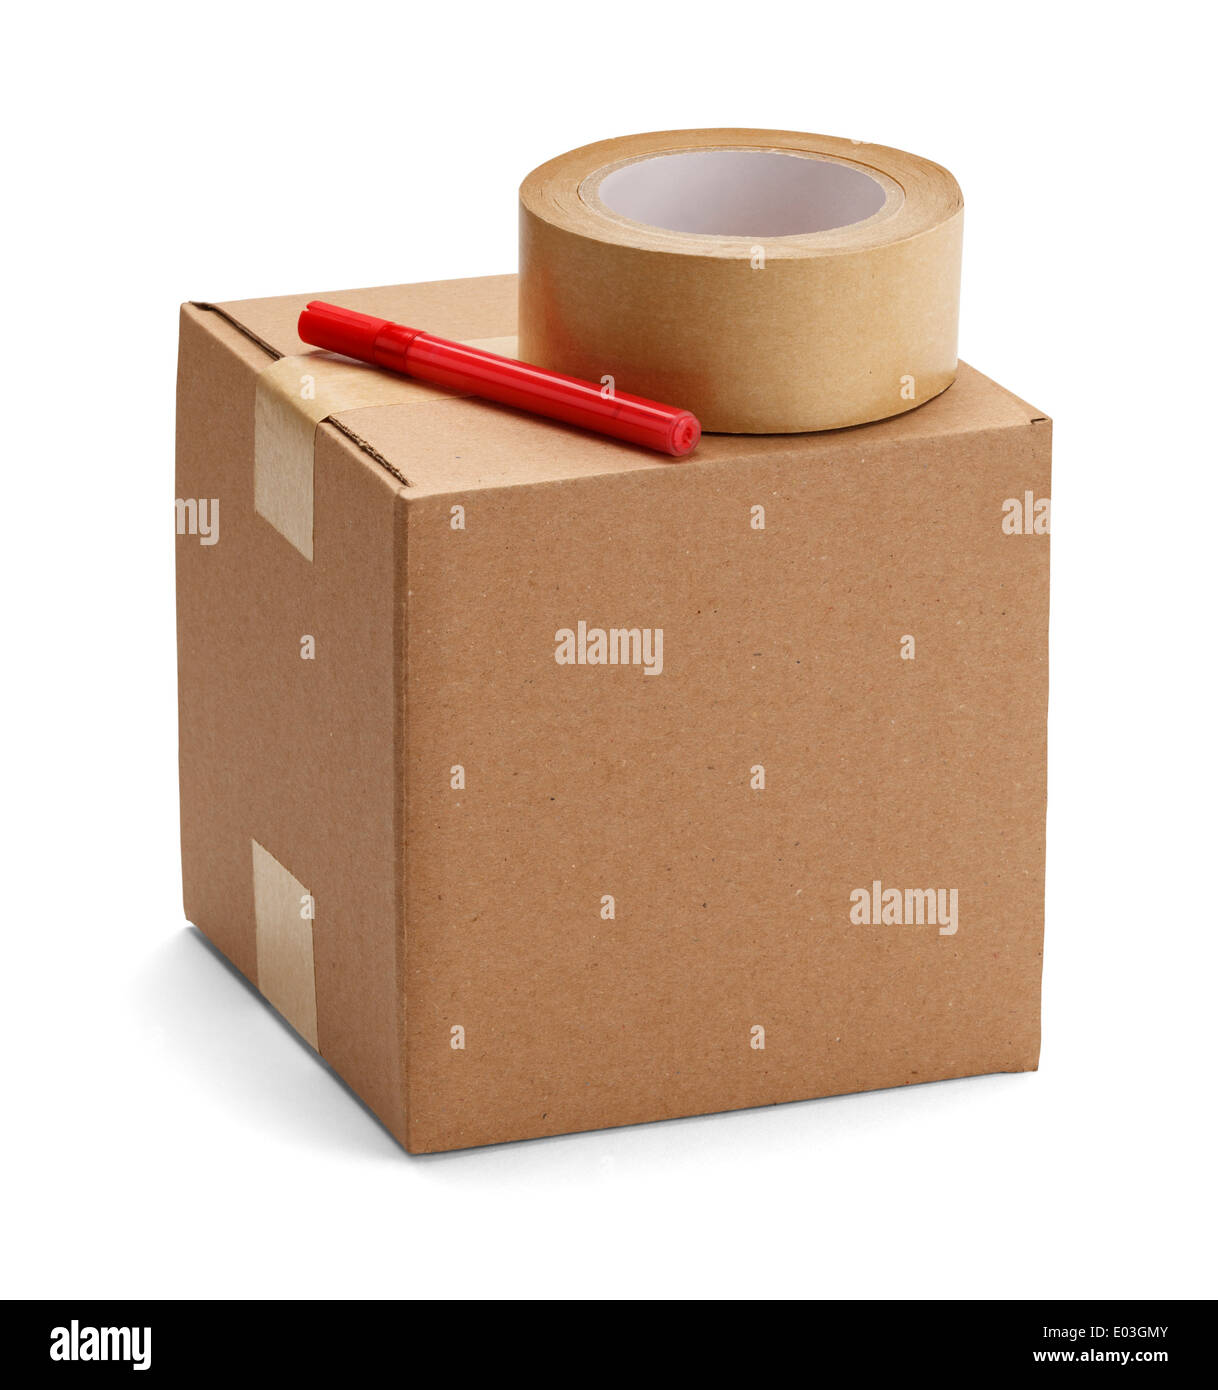 Boîte en carton brun avec des matériaux d'emballage, isolatedon un fond blanc. Banque D'Images